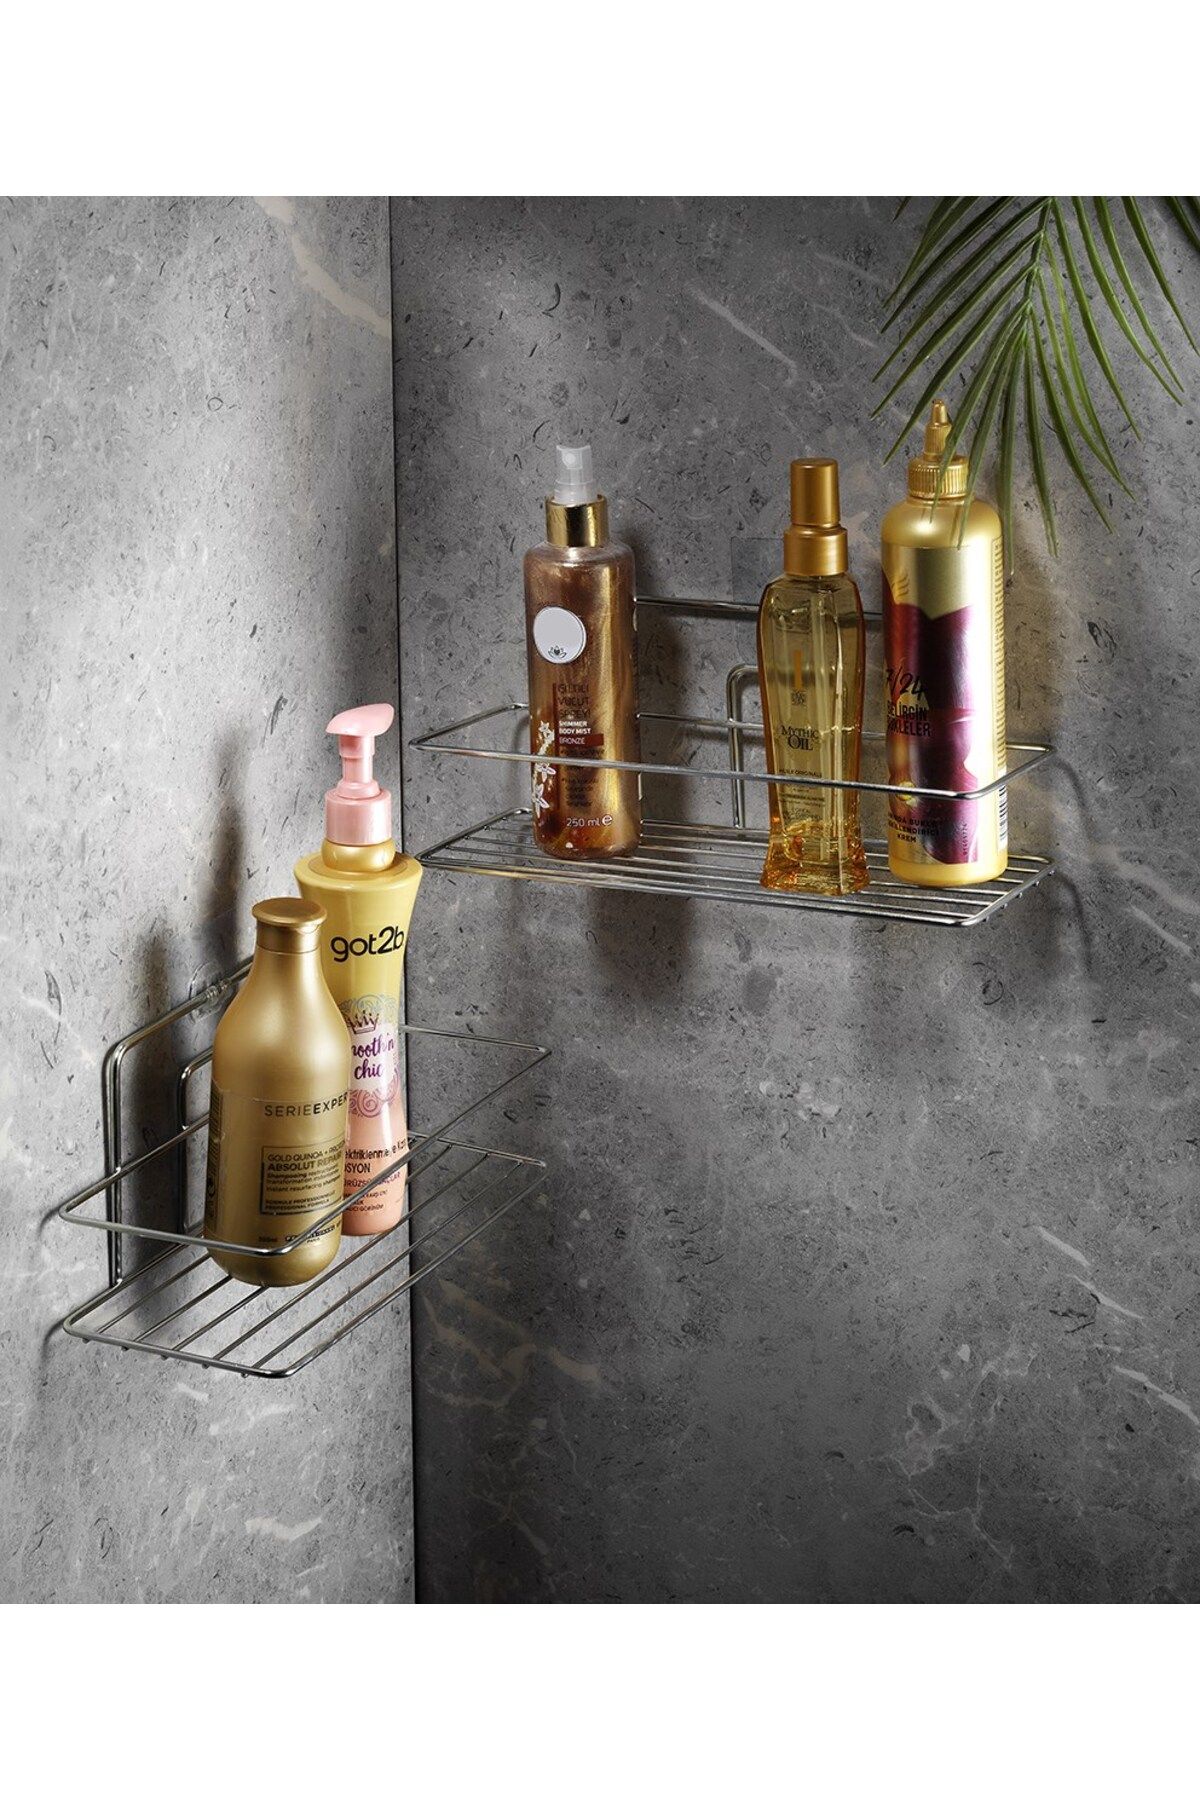 Sas Haus Yapışkanlı Banyo Düzenleyici Şampuanlık Duş Rafı Krom 2 Adet Tş-01